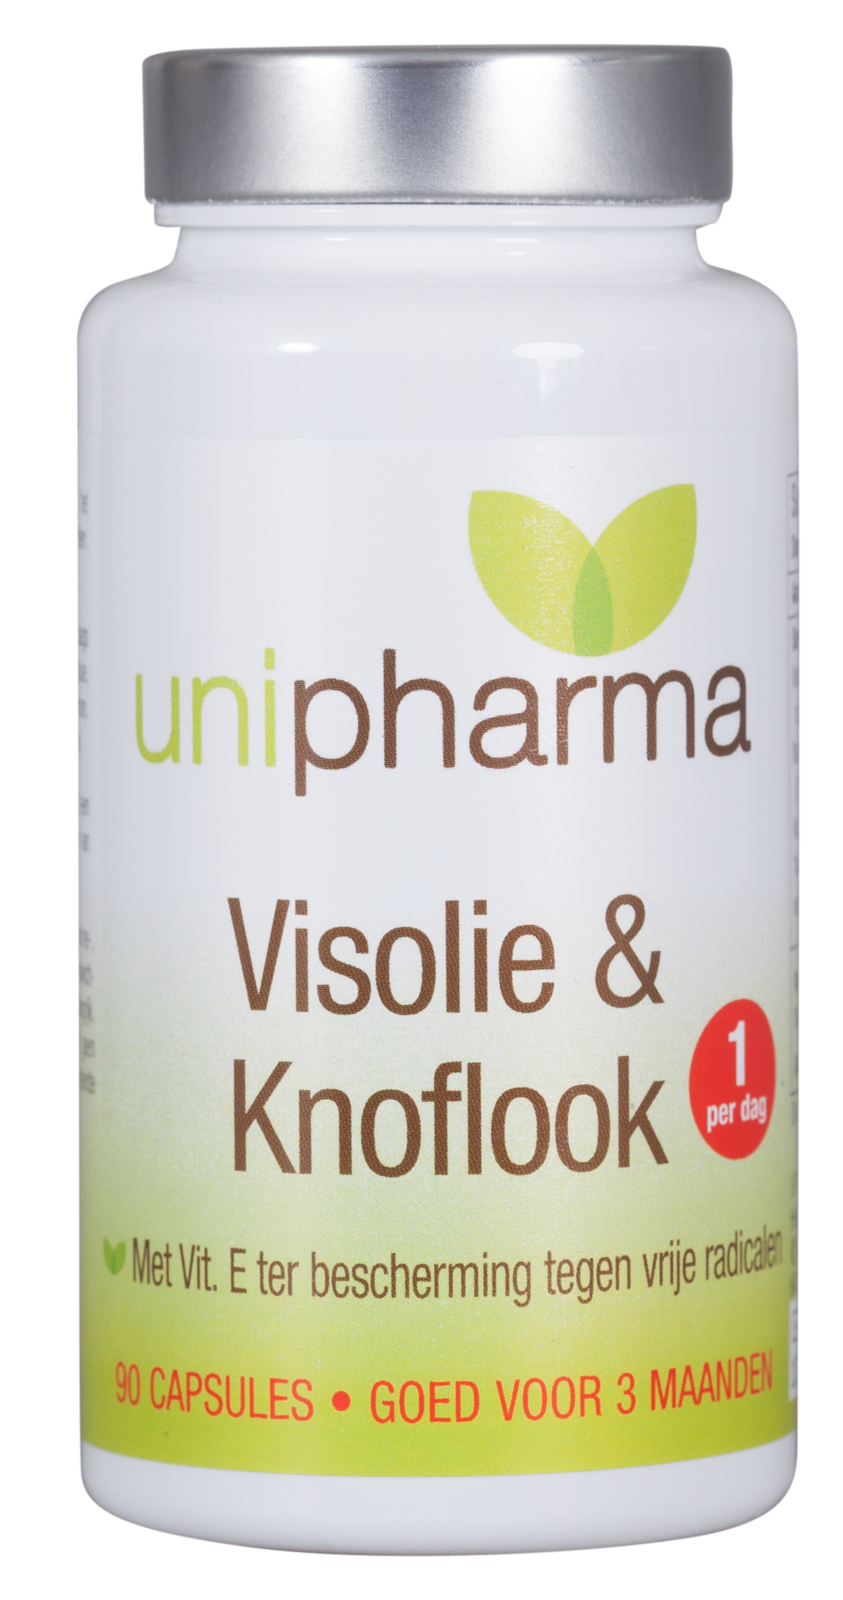 Unipharma Visolie & Knoflook